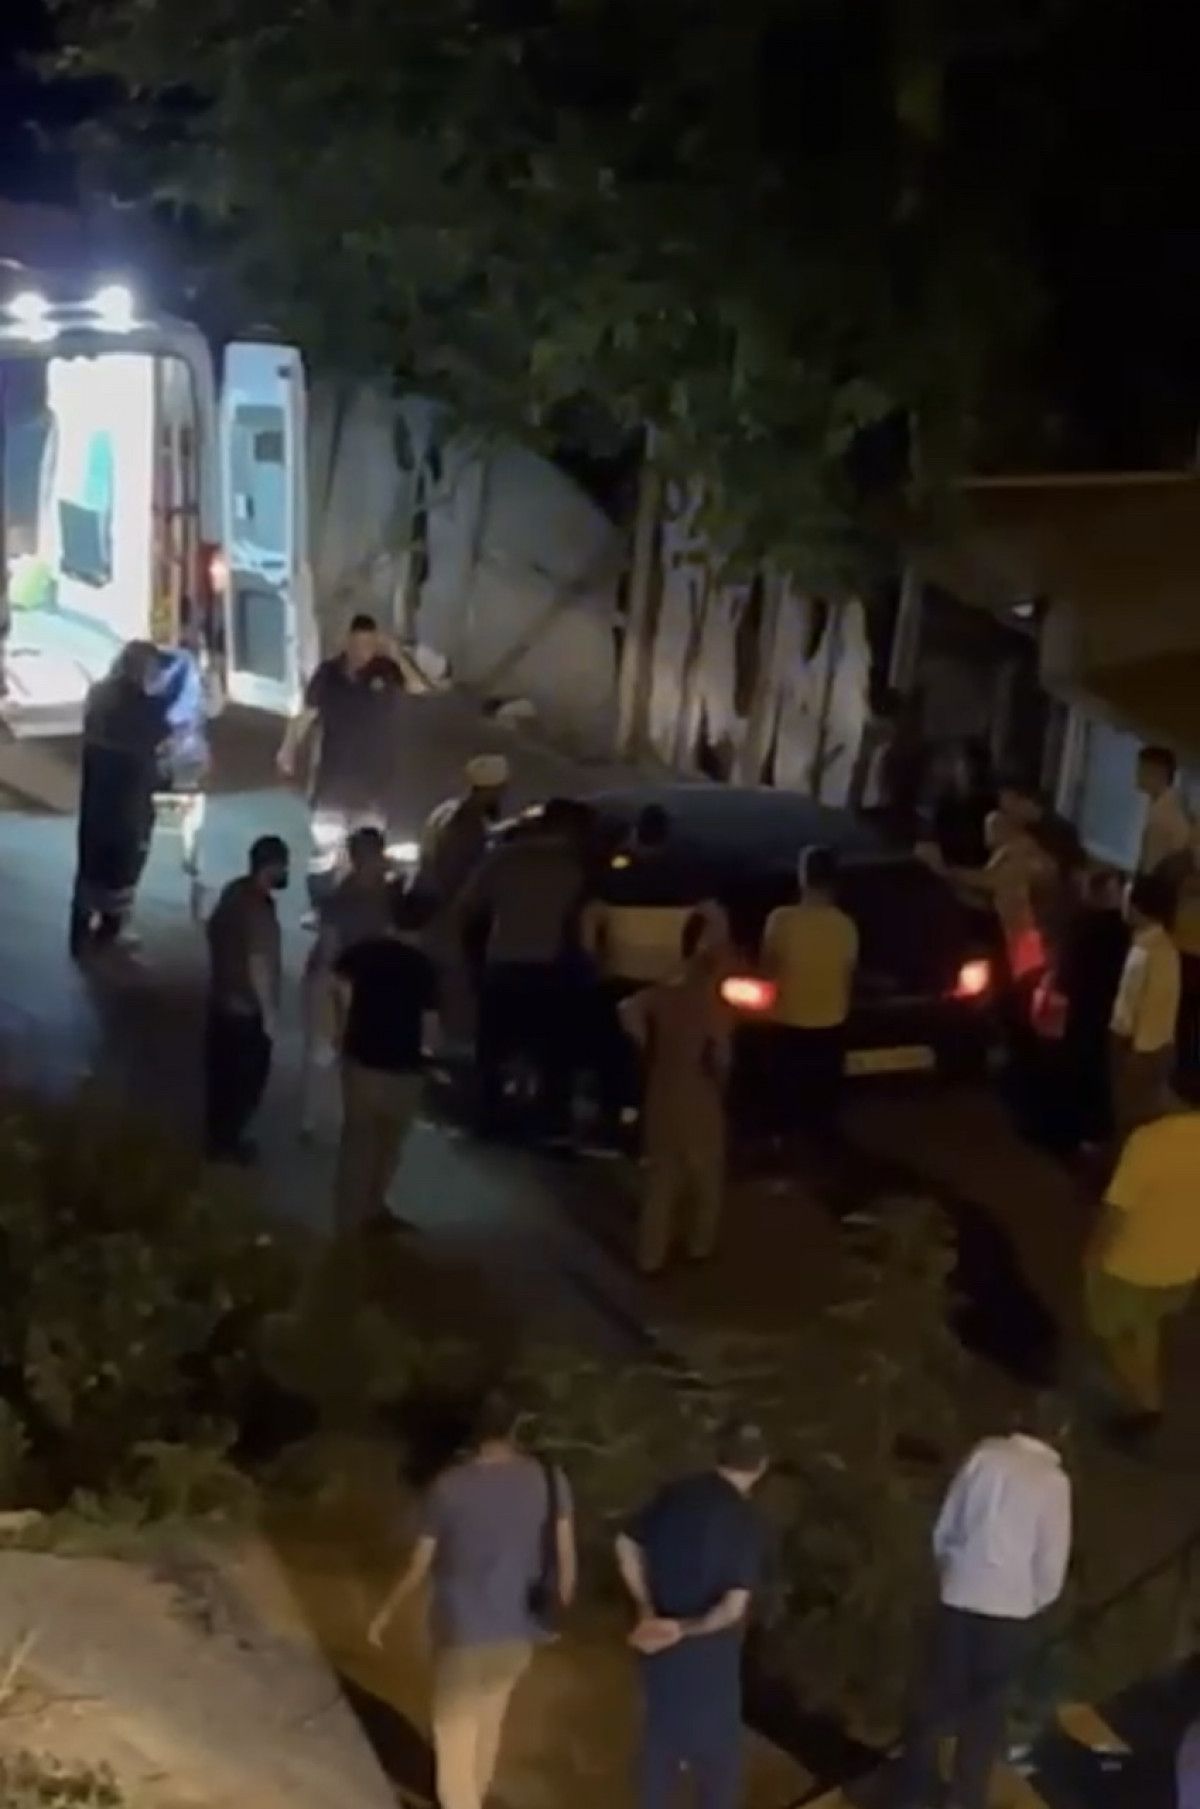  Ataşehir de sözlü tartışma silahlı kavgaya dönüştü: 2 yaralı  #2